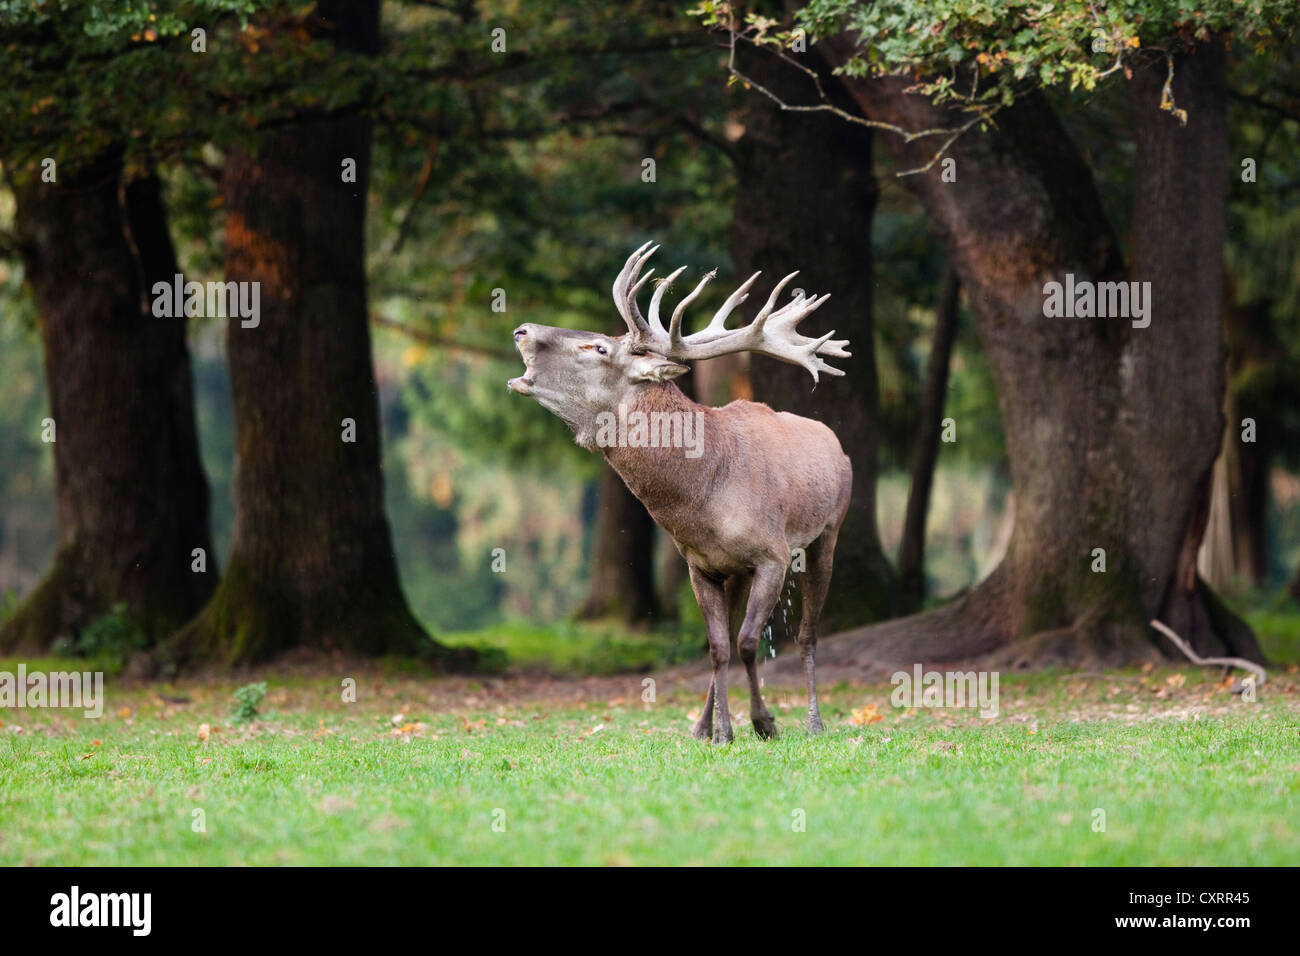 Red deer (Cervus elaphus) belling, Germany, Europe Stock Photo